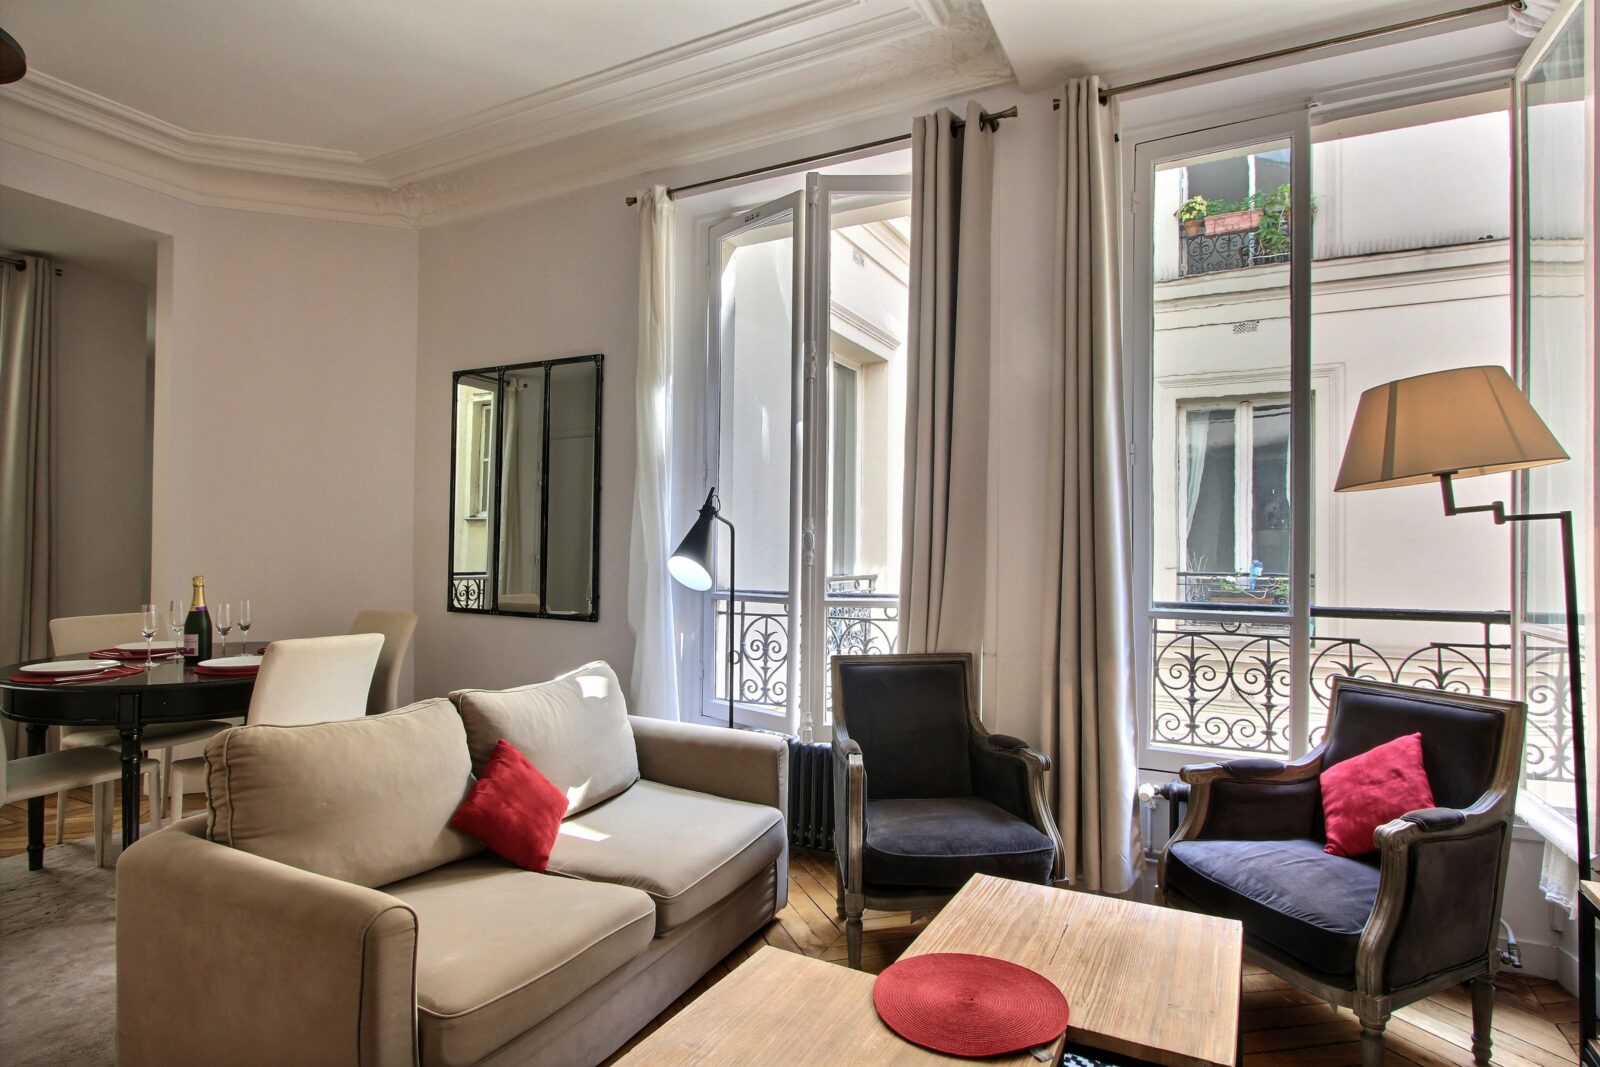 Haussmannian 2-bedroom near rue de Rivoli